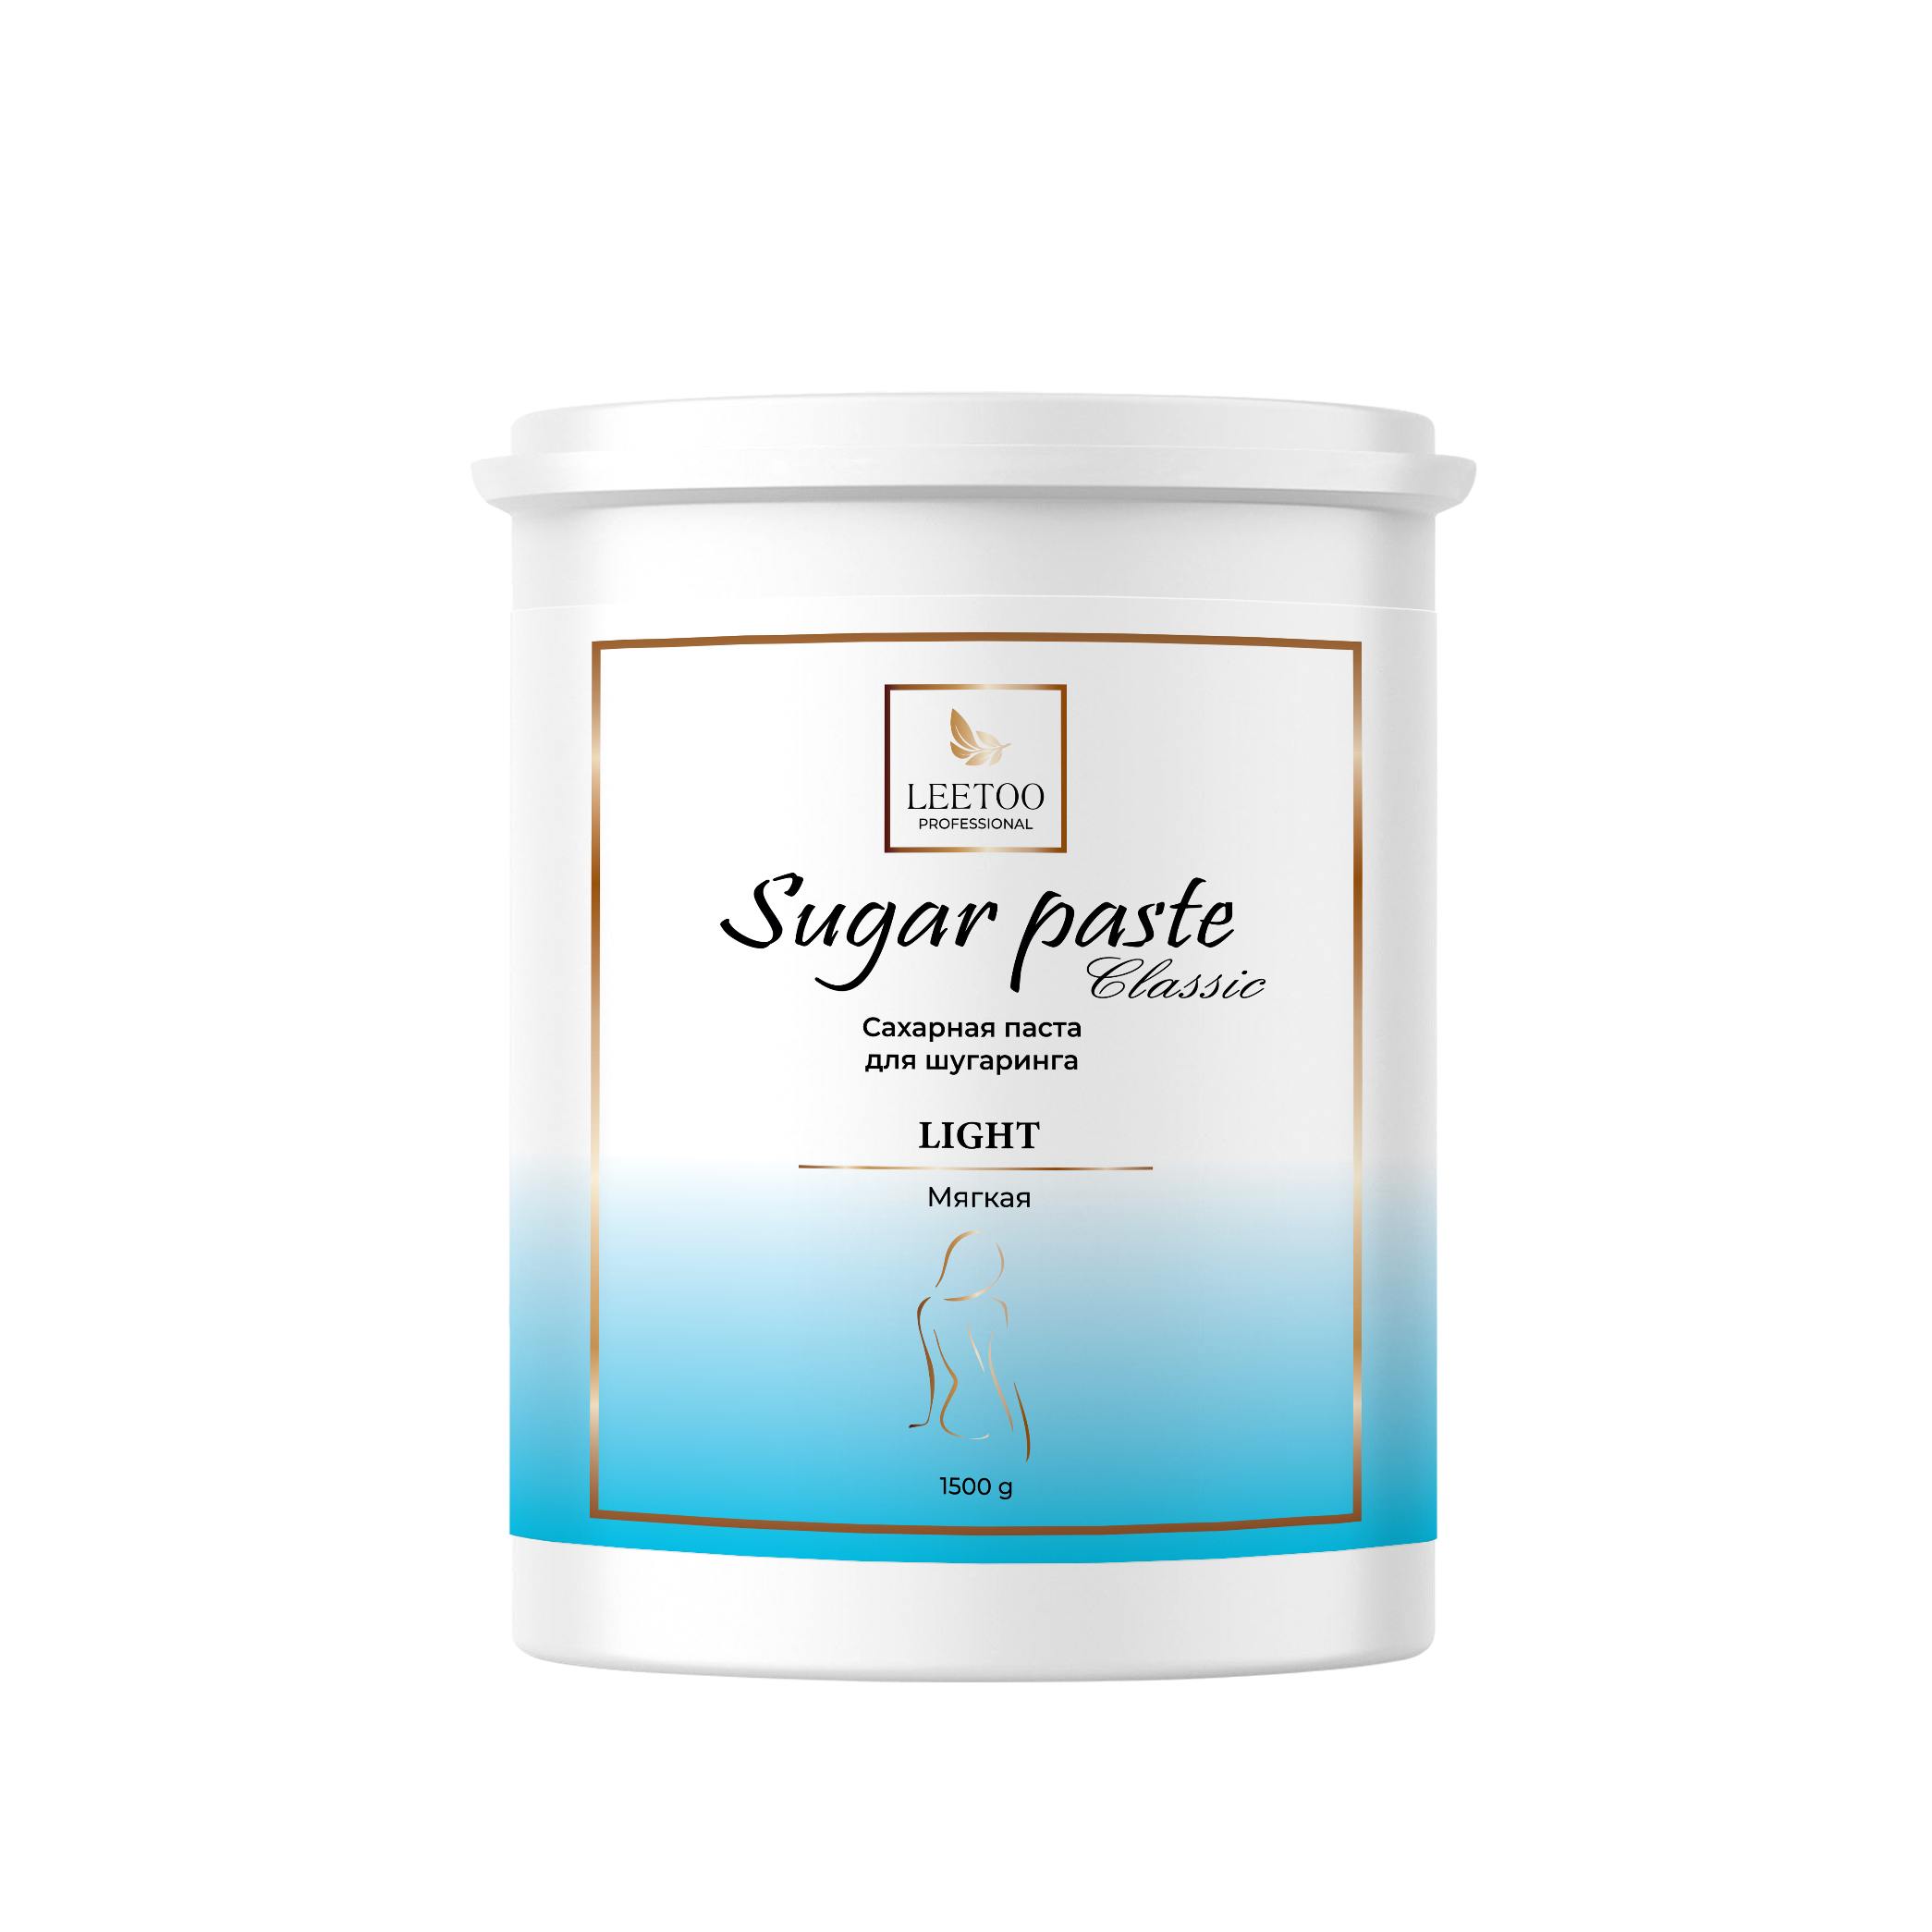 Сахарная паста для шугаринга LEETOO CLASSIC LIGHT Мягкая 1500 г. 12 месяцев сахарная паста для шугаринга мягкая